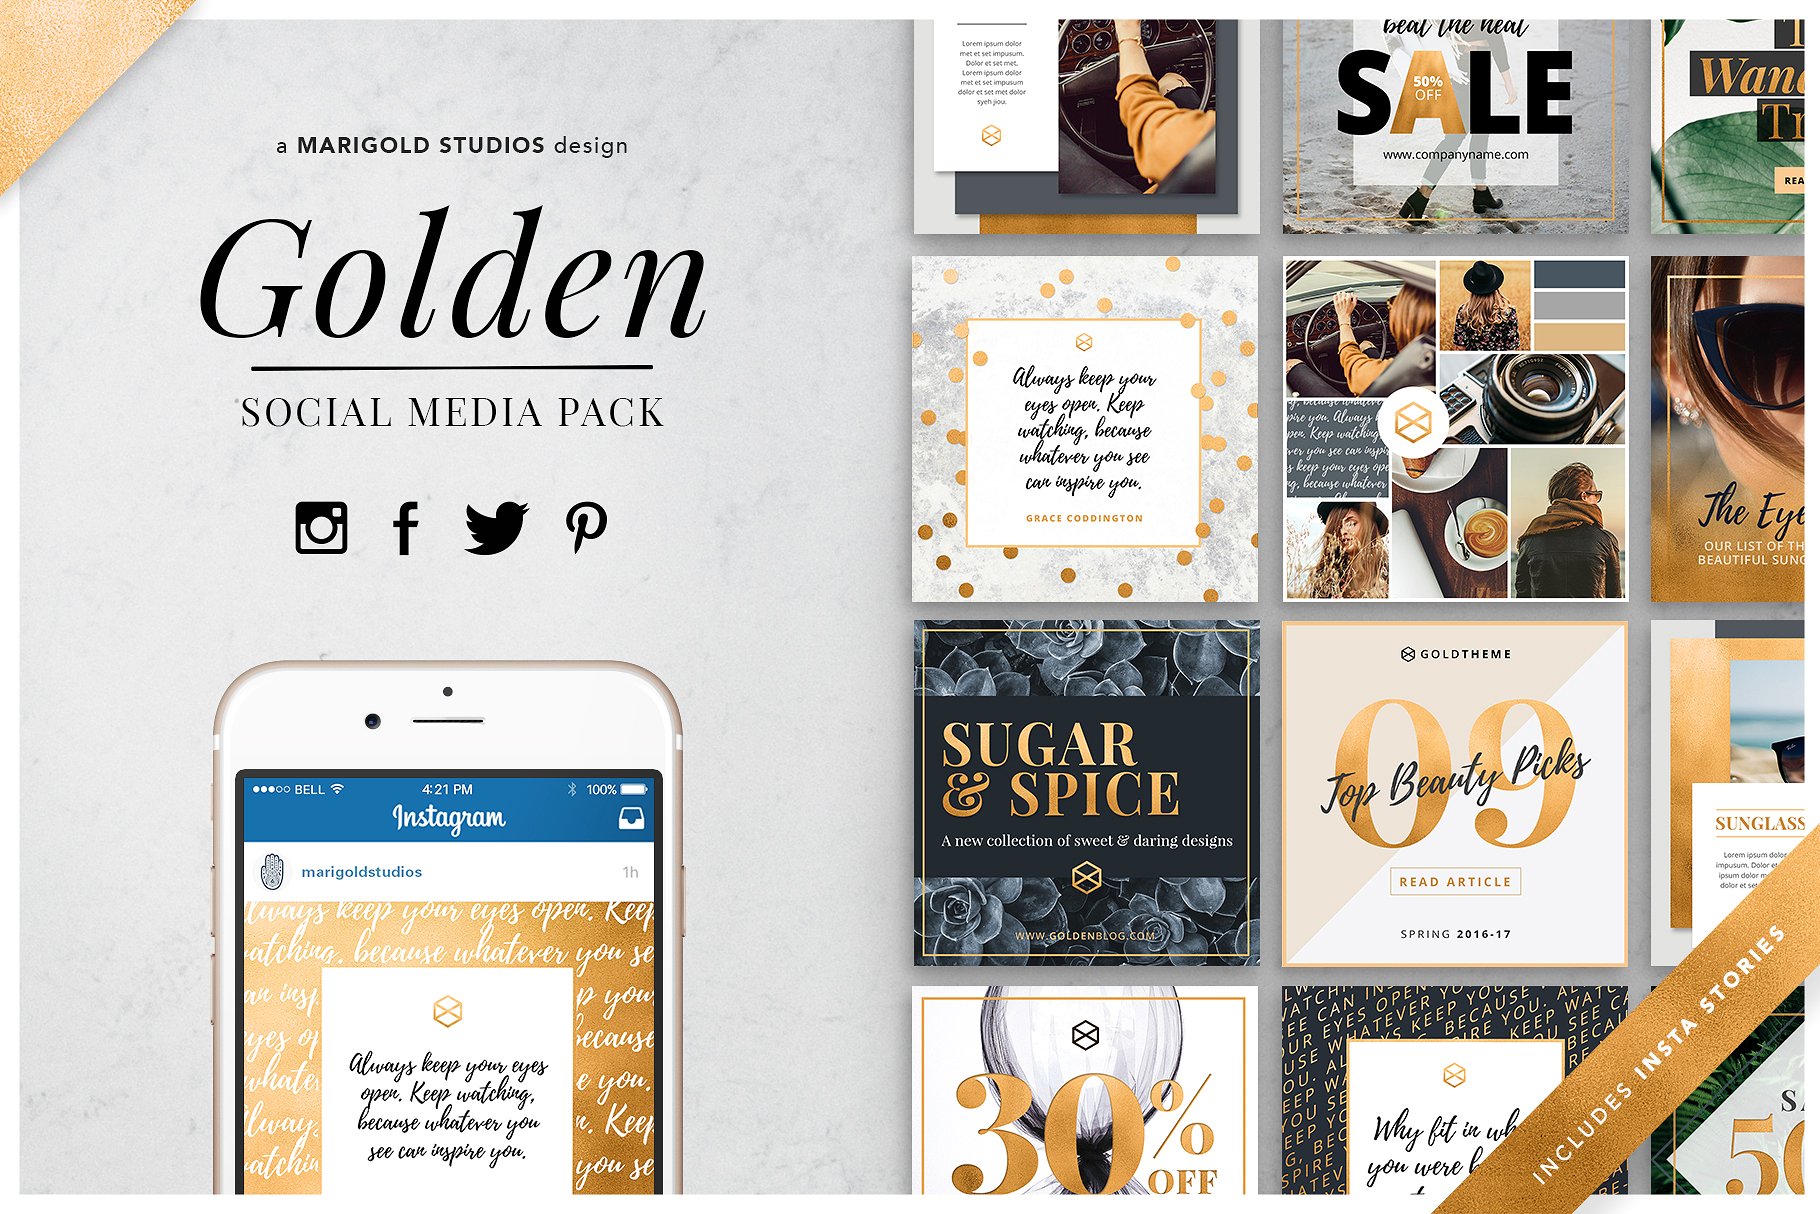 时尚生活主题社交媒体设计素材包 GOLDEN | Social Media Pack插图